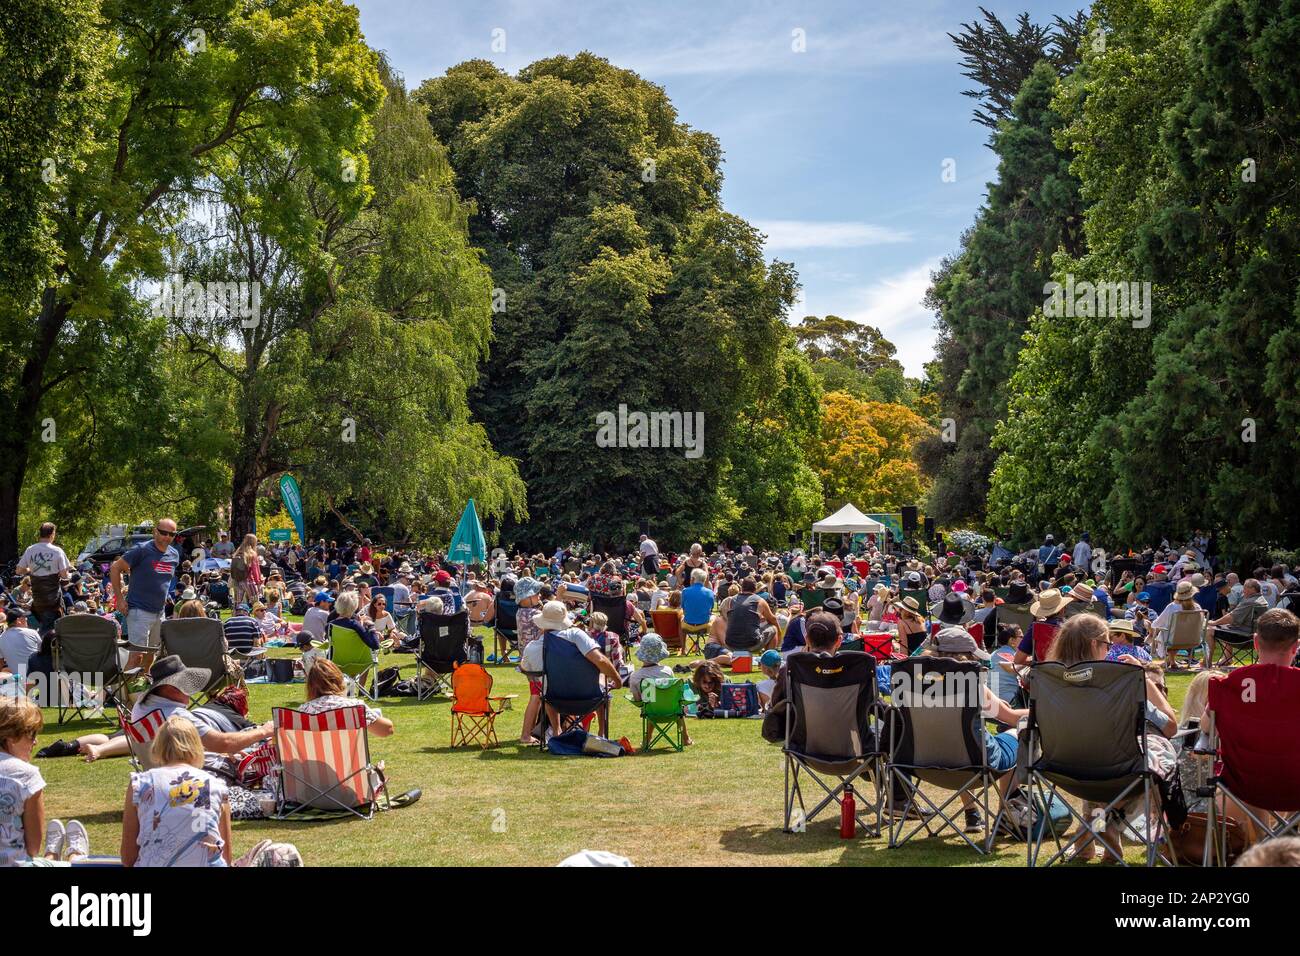 Christchurch, Canterbury, Nuova Zelanda, 01/19/2020: la gente di tutte le età si riuniscono in un parco della città per un pubblico estate evento musicale Foto Stock